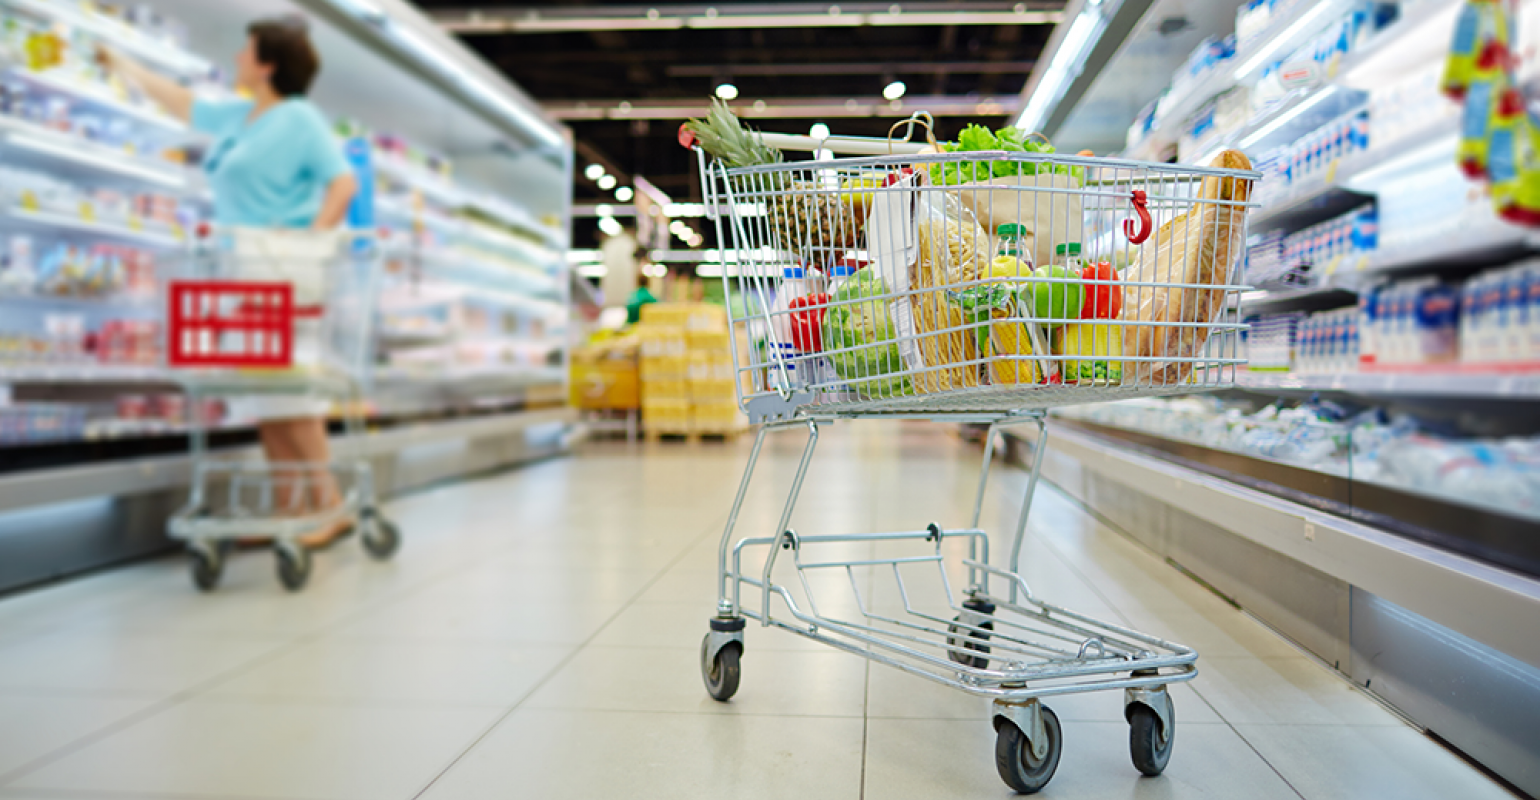 Assosiasiya: “Supermarketlər istehsalçılardan aldıqları məhsulların dəyərini vaxtında ödəmirlər”